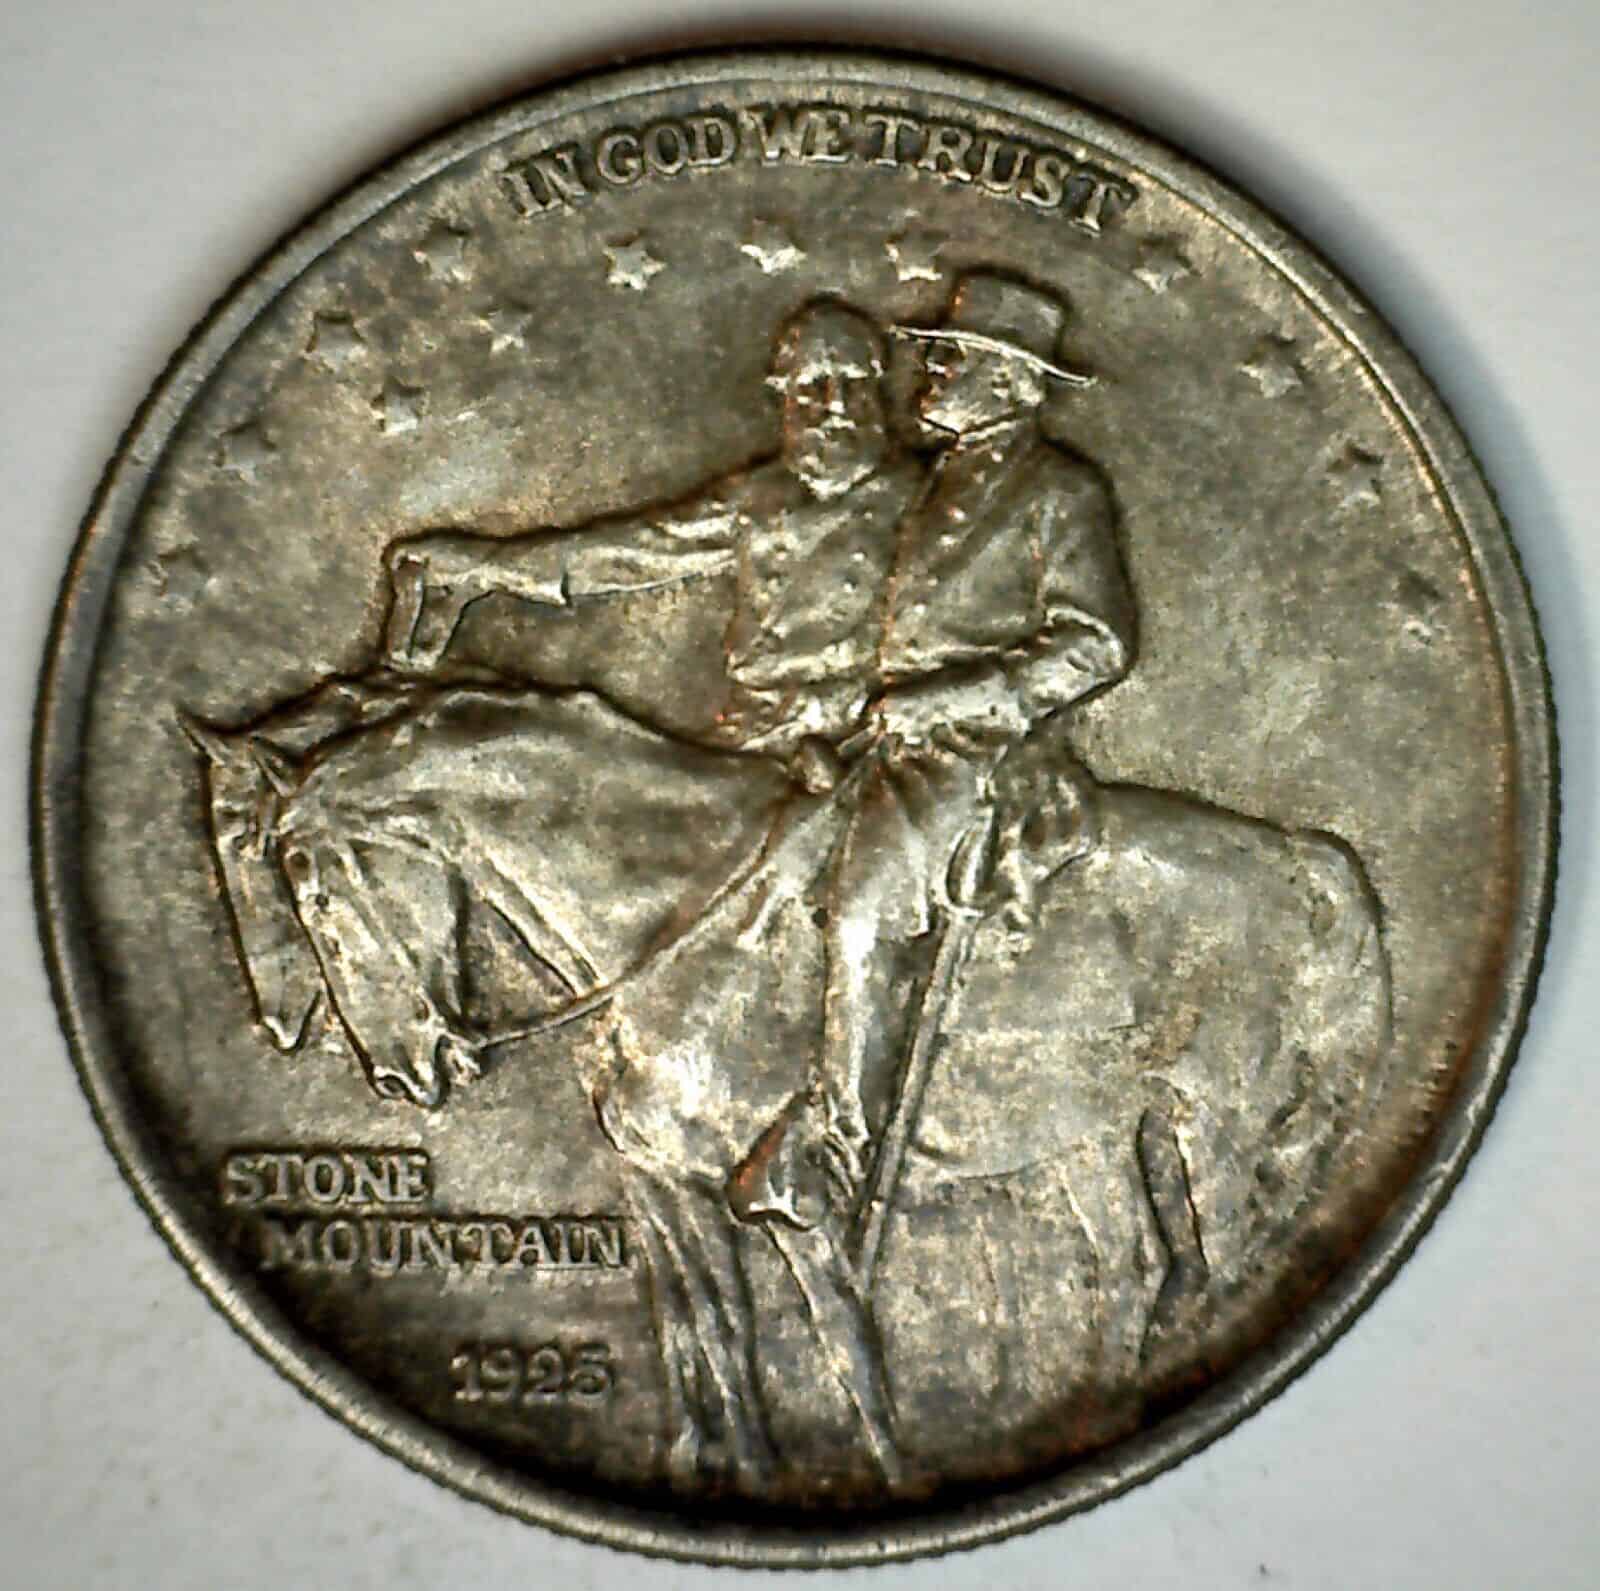 1925 Stone Mountain Half Dollar Value